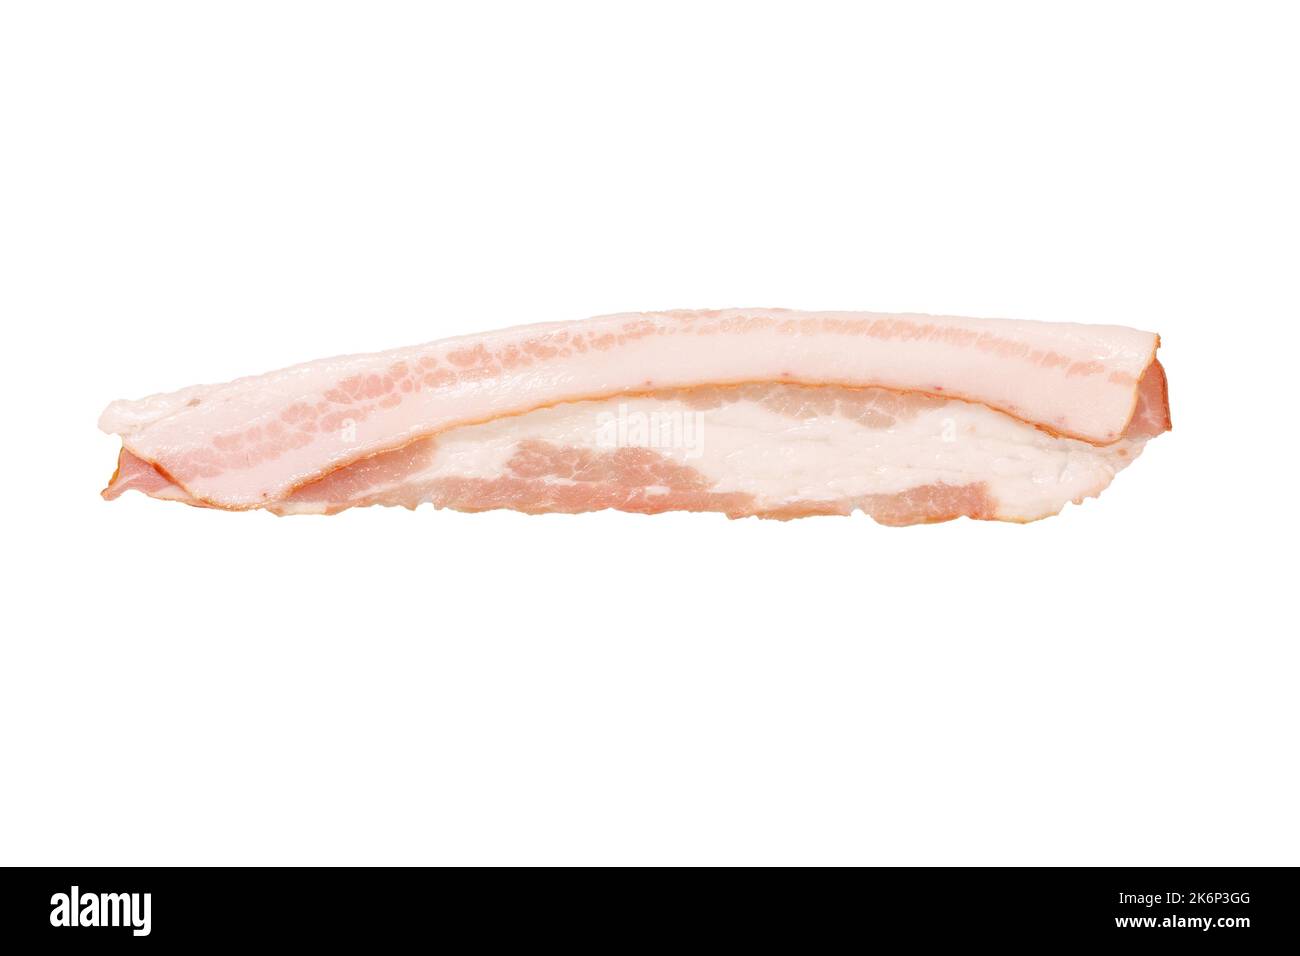 morceau de bacon fumé cru isolé sur fond blanc Banque D'Images